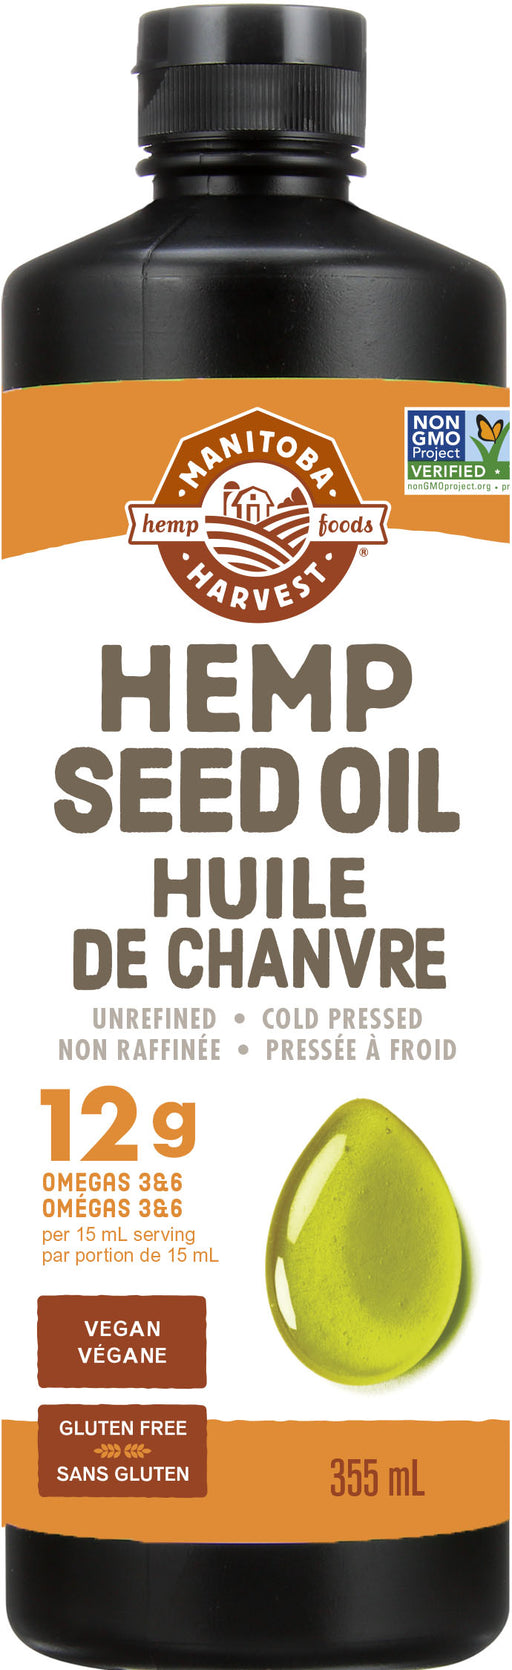 Manitoba Harvest - Hemp Seed Oil, 355ml